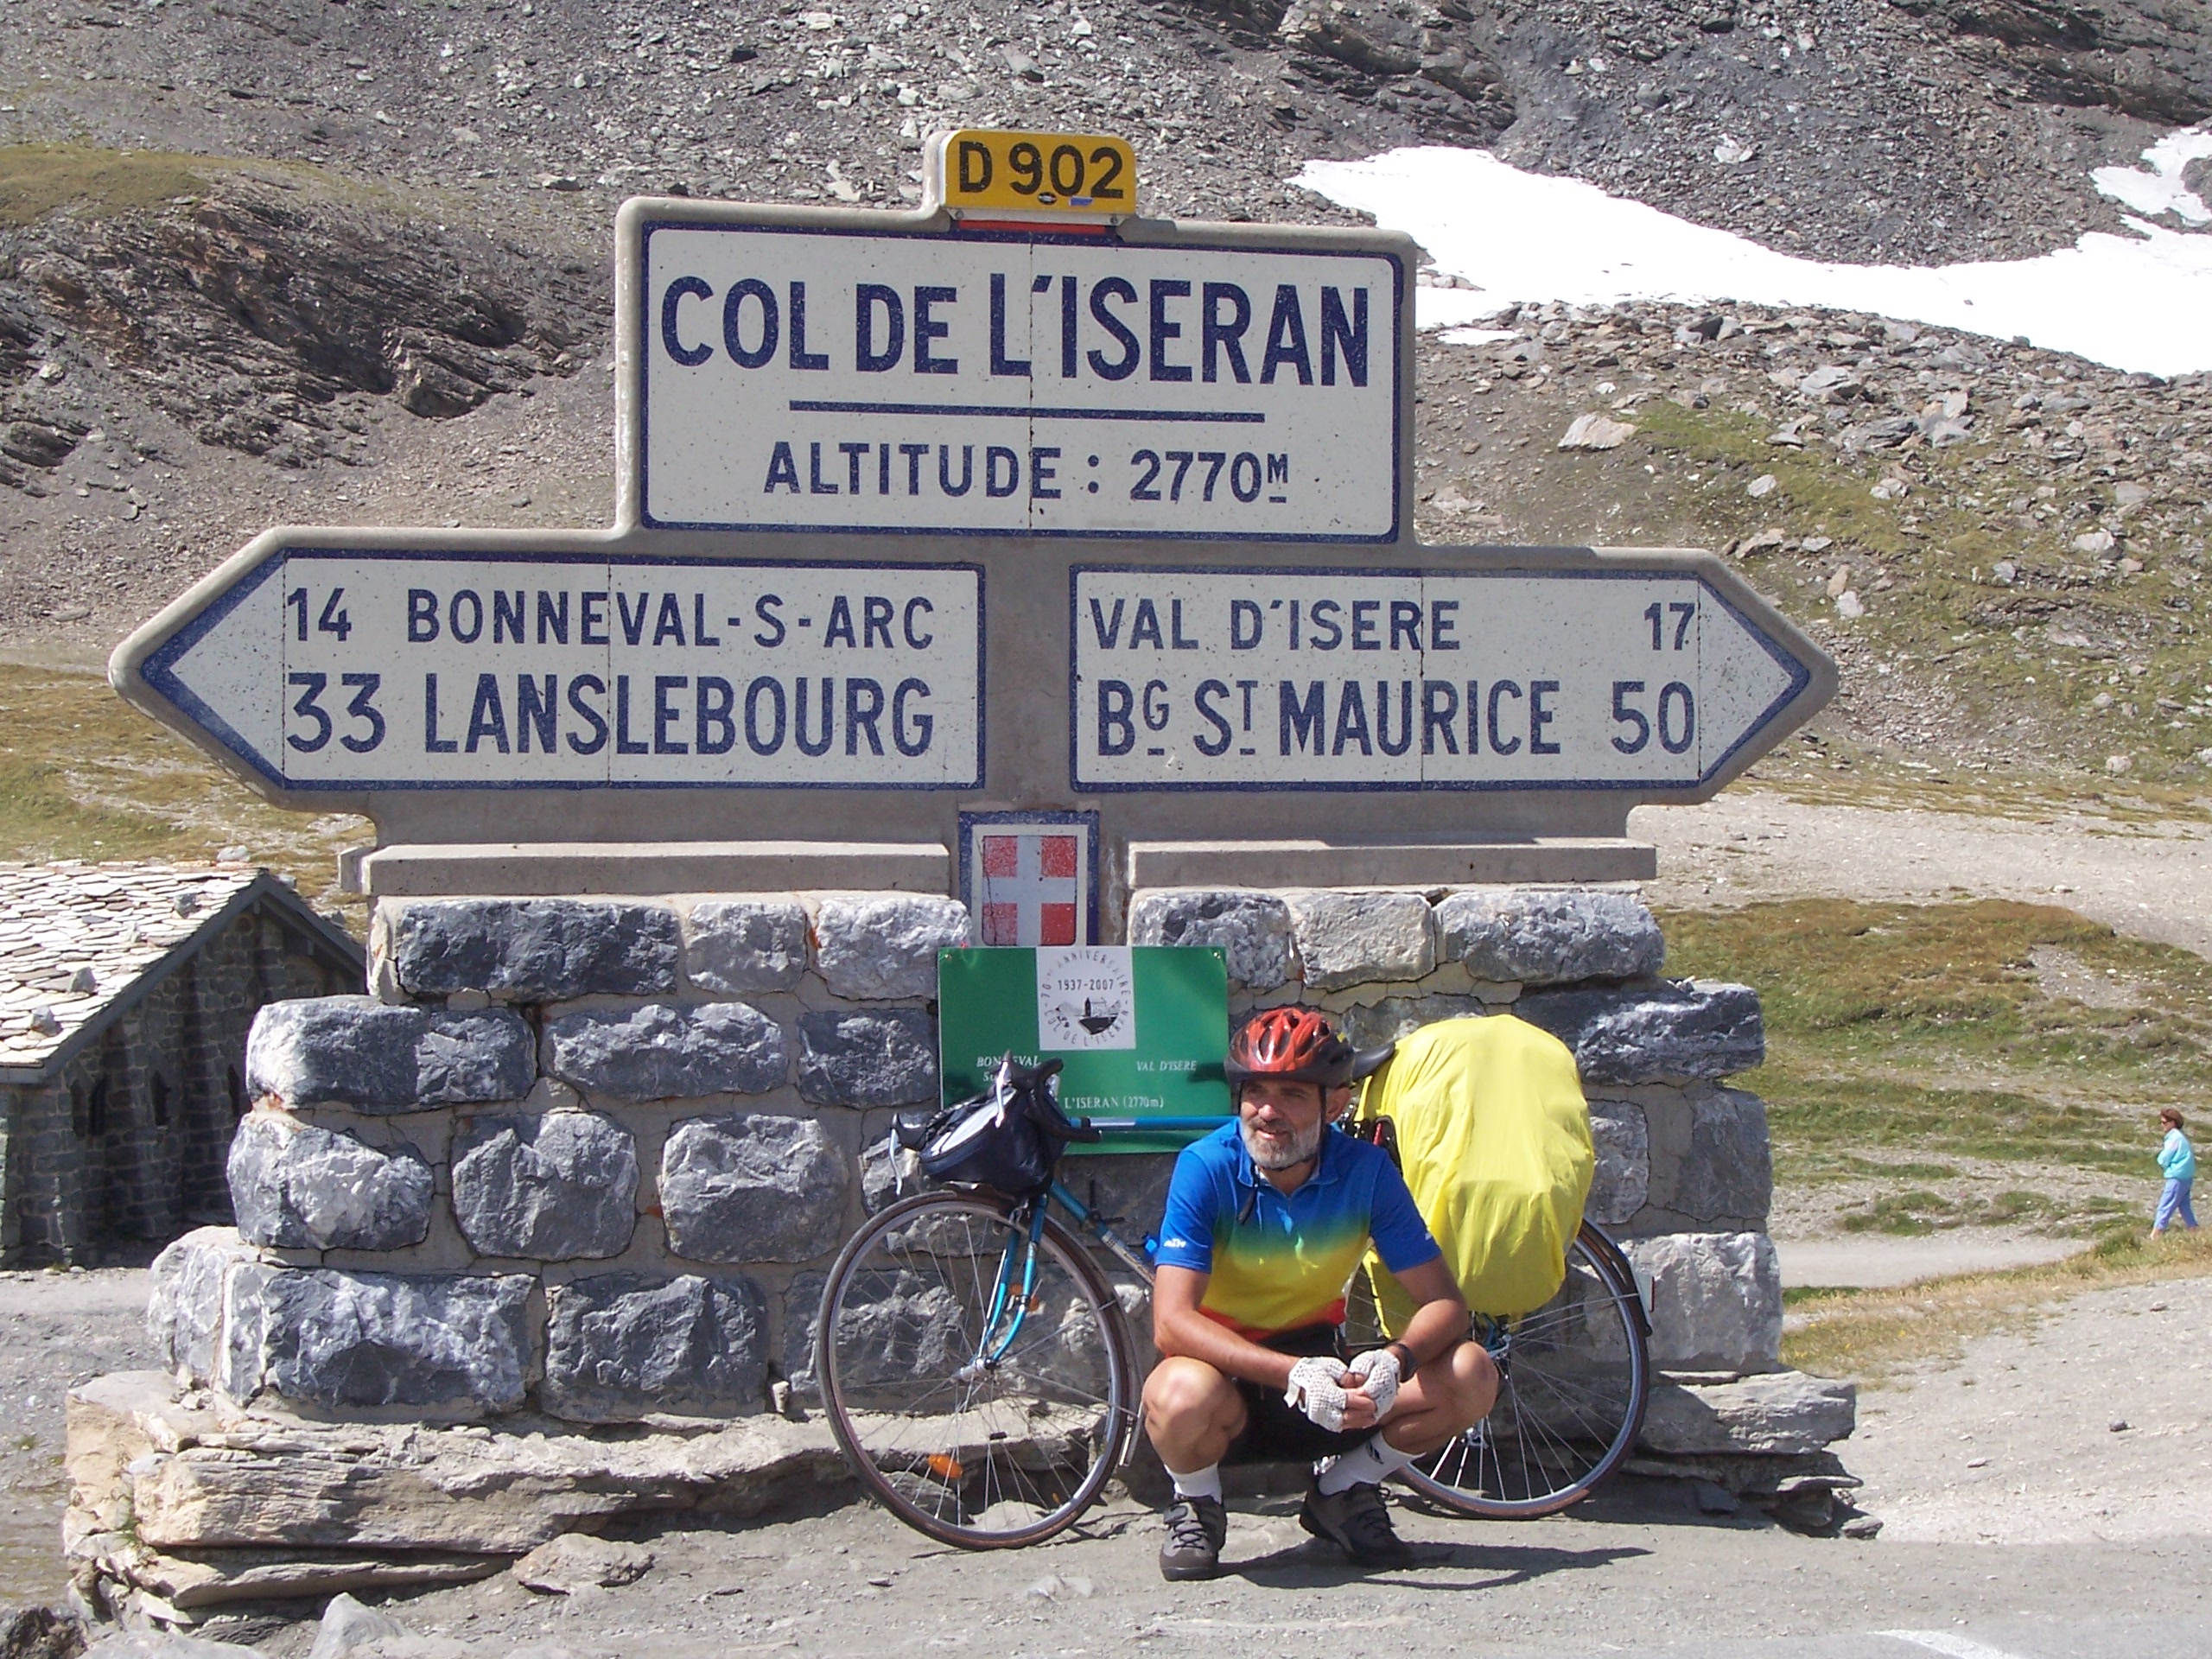 Col del Izeran 2770, ищу партнерку на велотуры,поездки на велосипеде